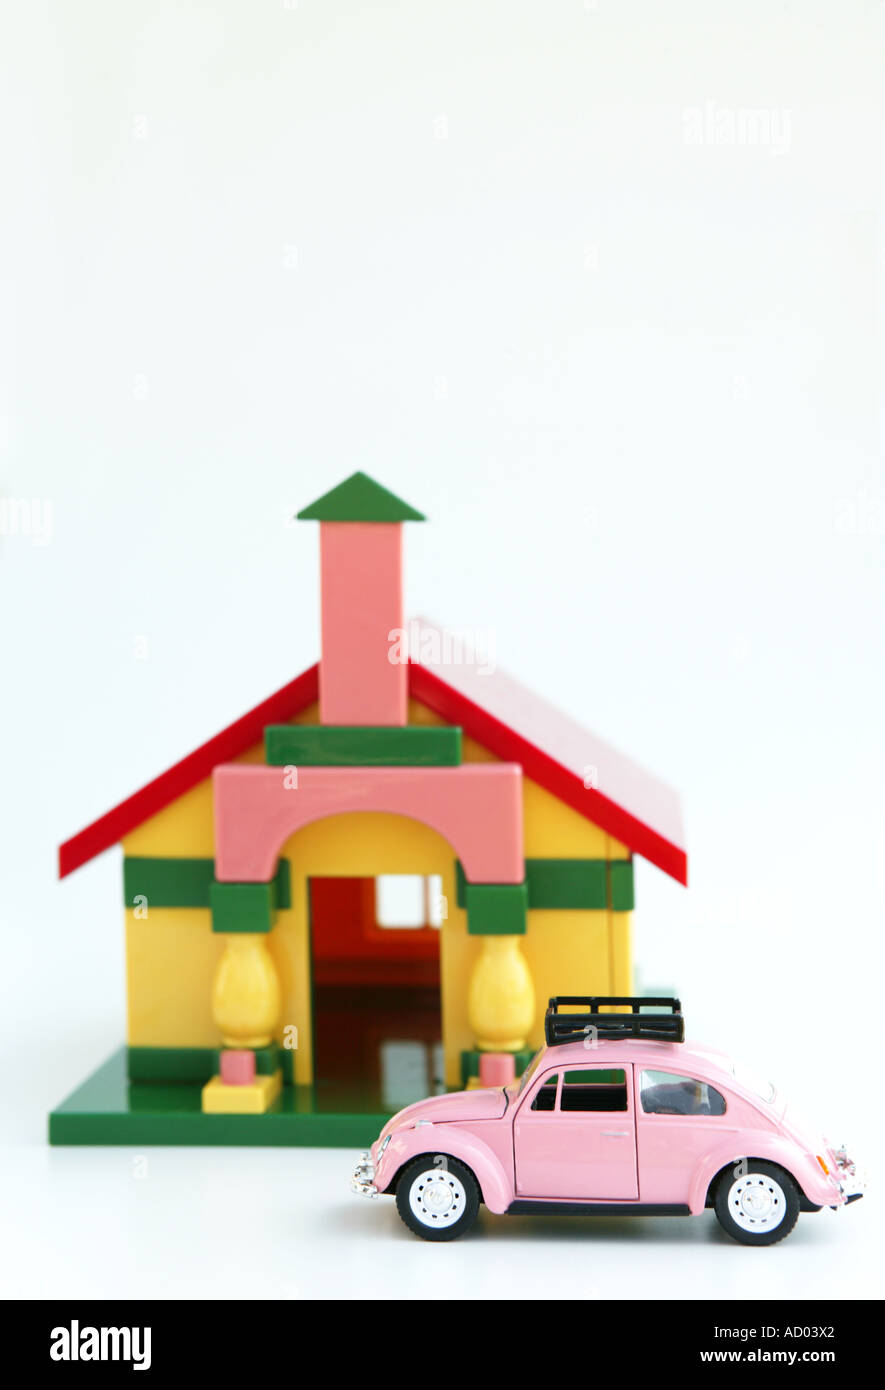 Darstellung der Immobilien-Markt mit Kinder-Spielzeug, um ein Licht zu geben oder im Gehäuse Nerven Illustration zu einem ernsten Thema Stockfoto